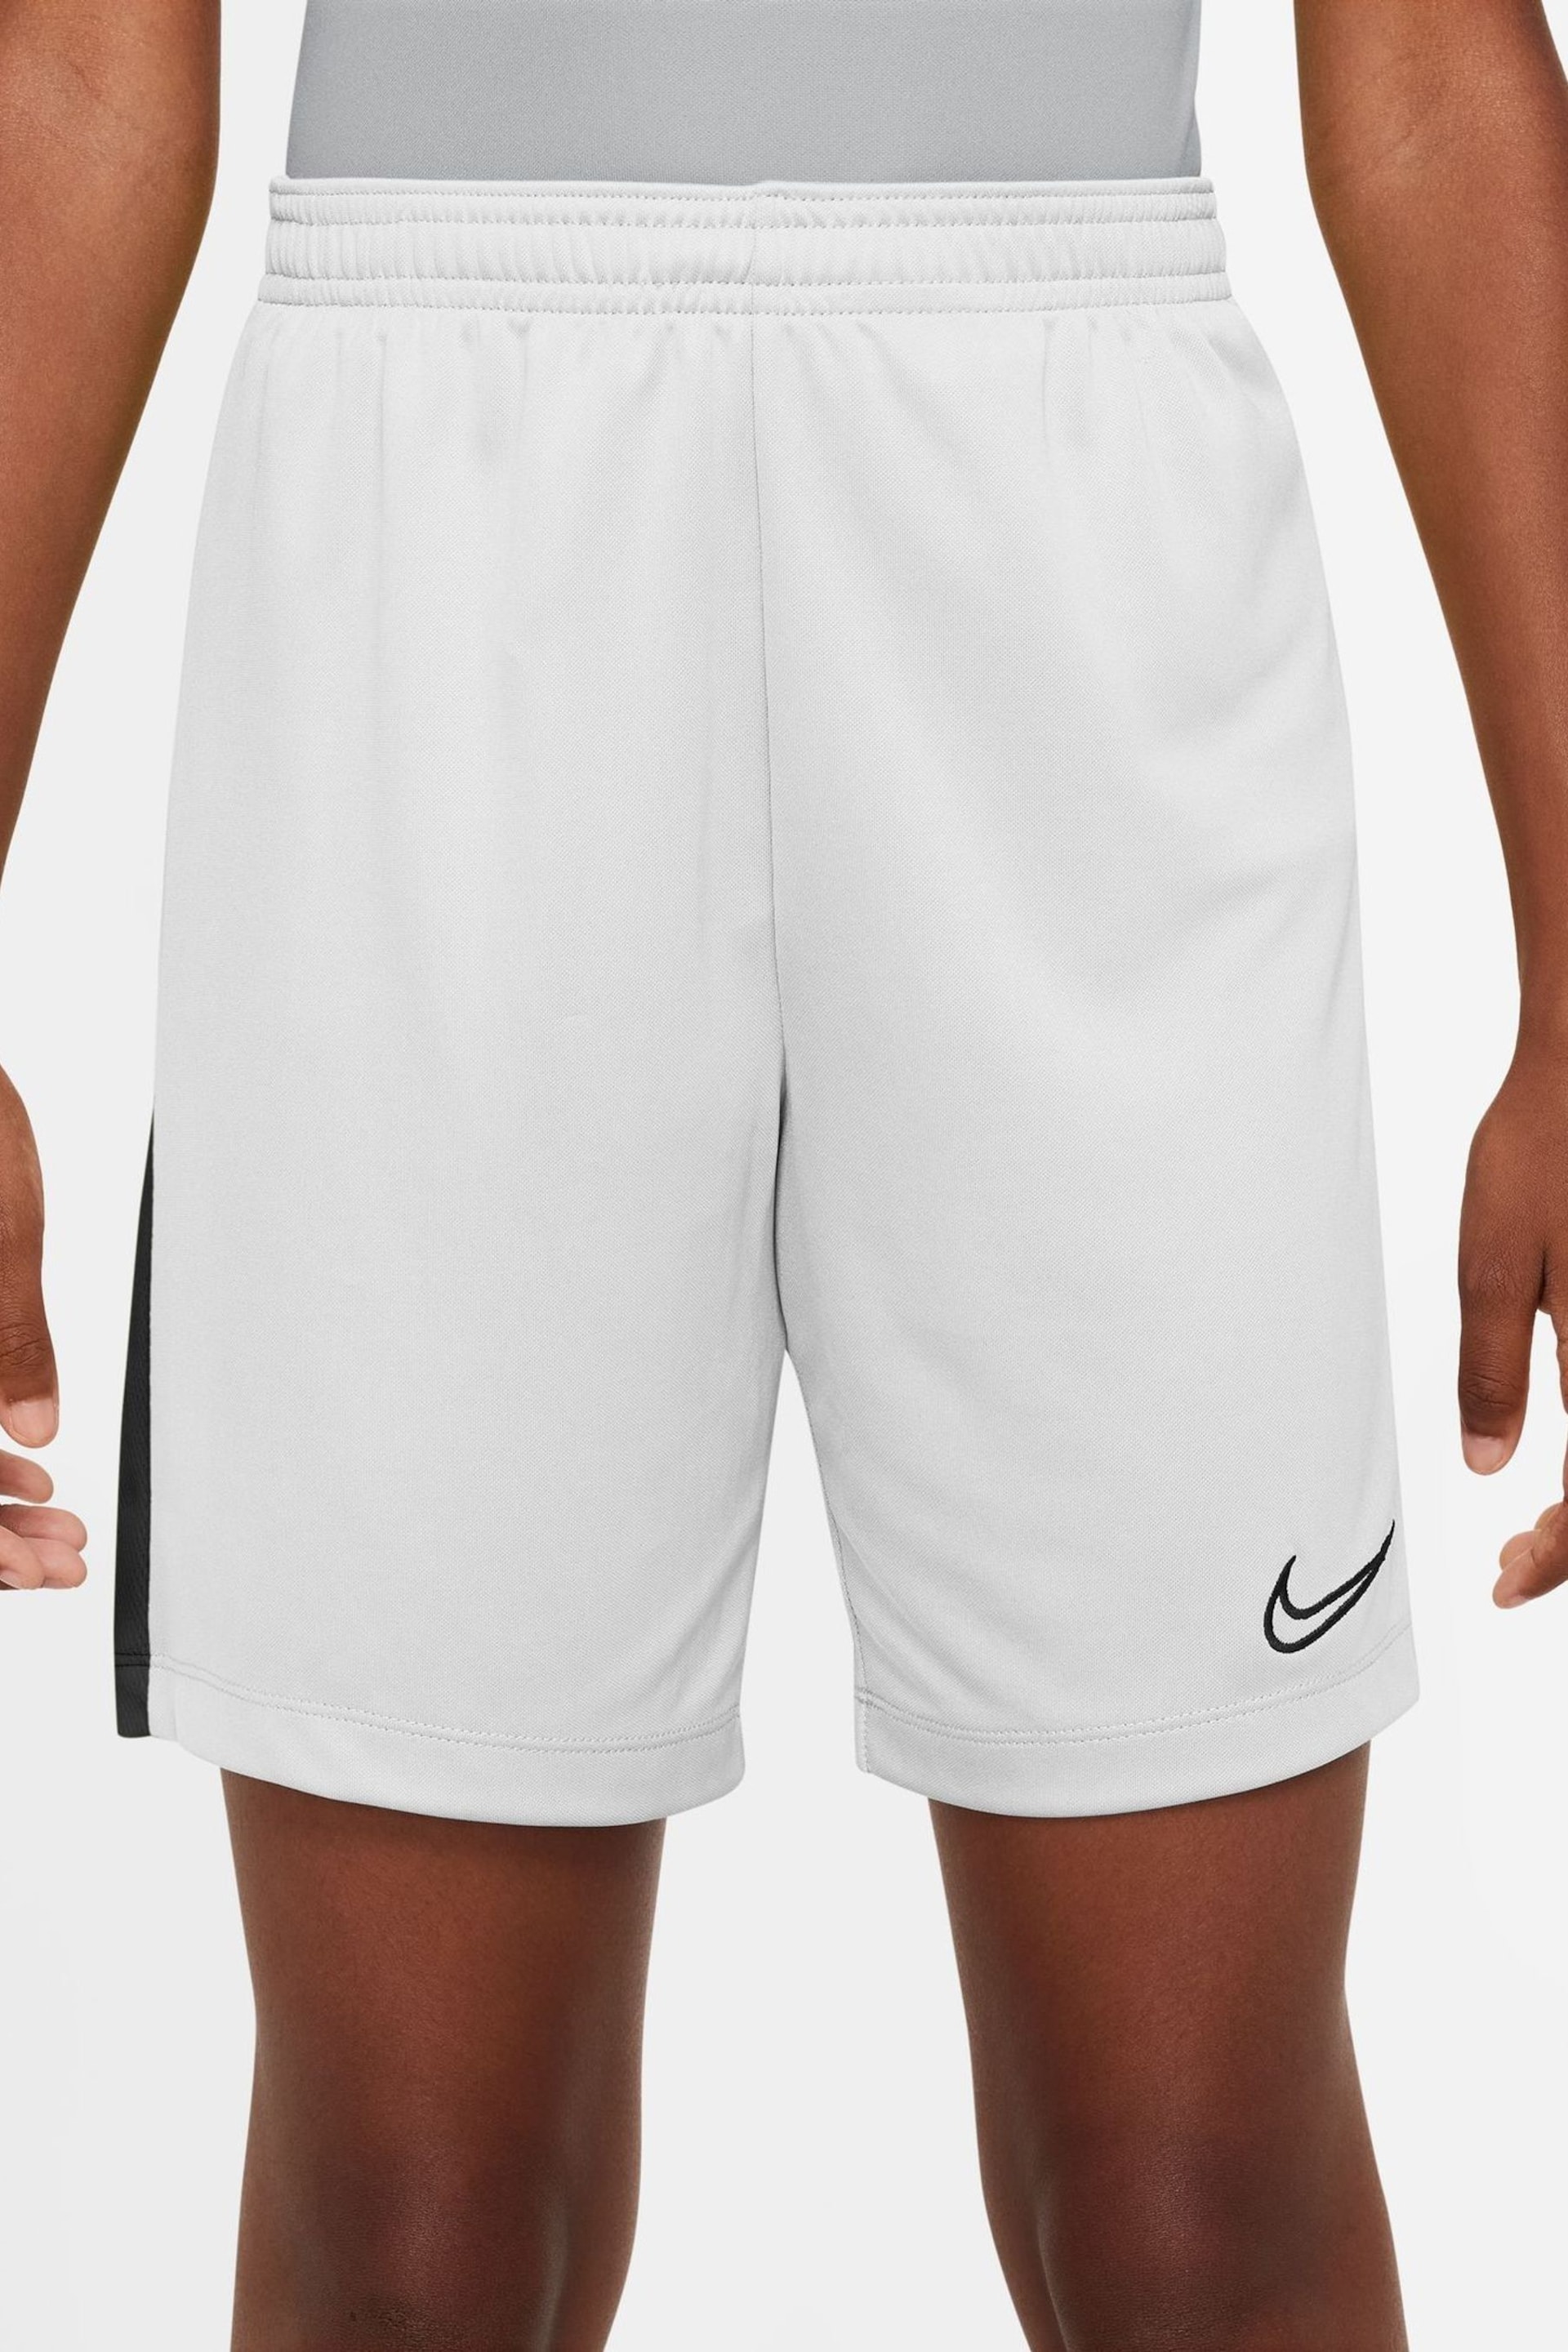 Nike White Dri-FIT Academy Training Shorts - Image 1 of 10